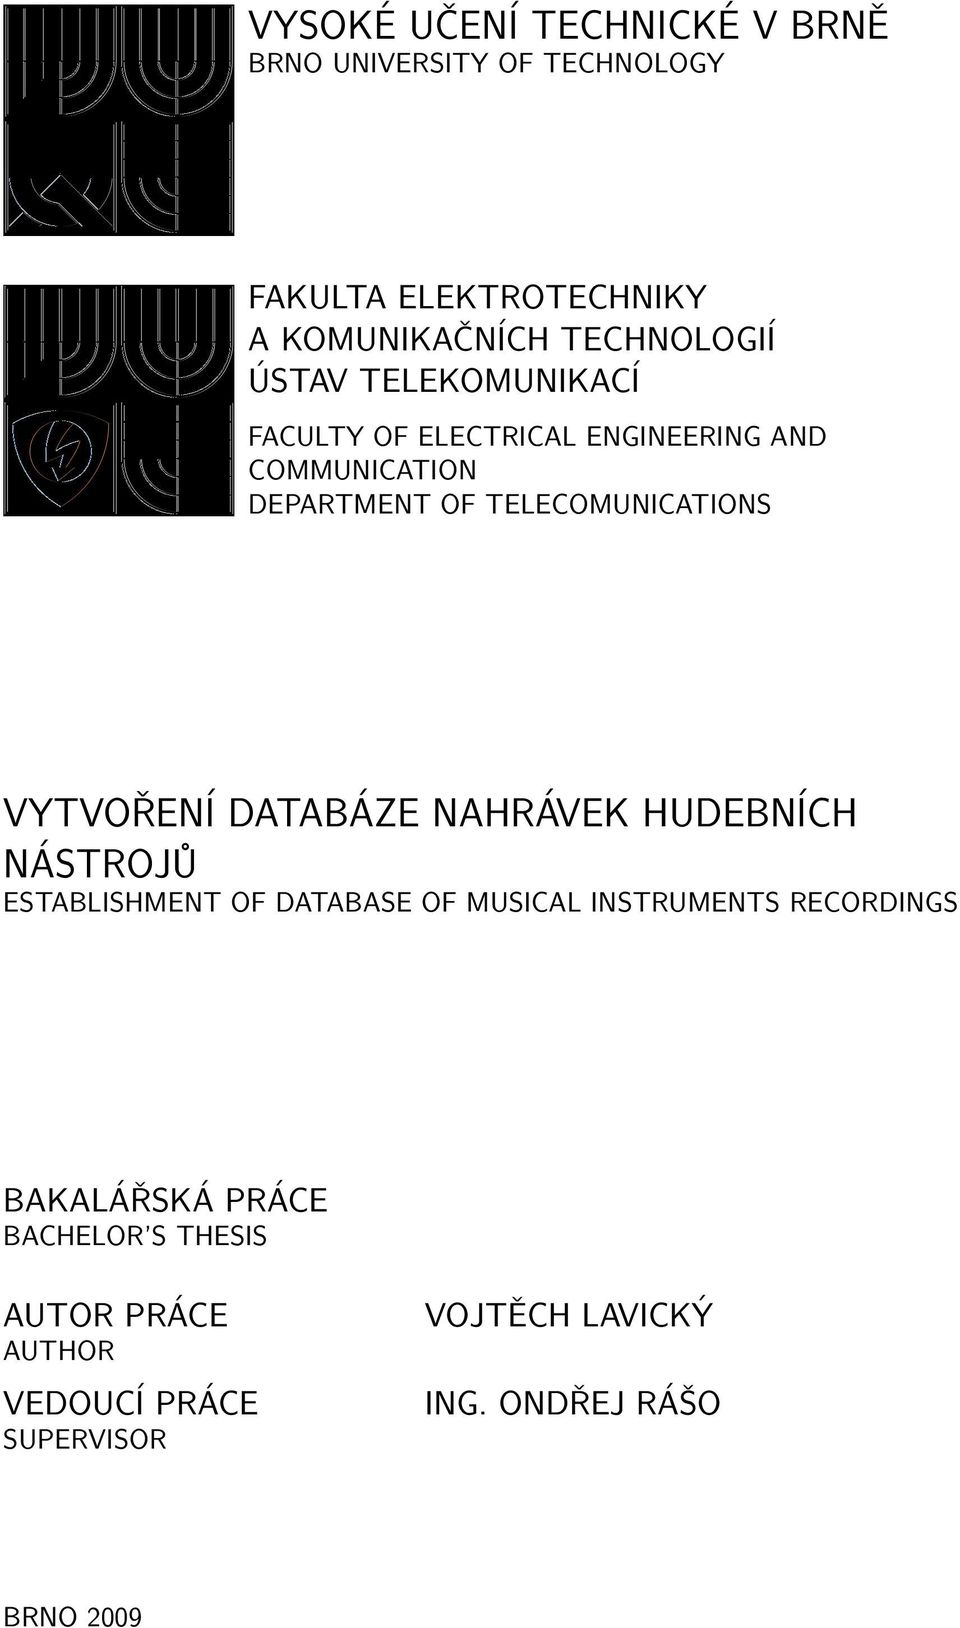 VYTVOŘENÍ DATABÁZE NAHRÁVEK HUDEBNÍCH NÁSTROJŮ ESTABLISHMENT OF DATABASE OF MUSICAL INSTRUMENTS RECORDINGS